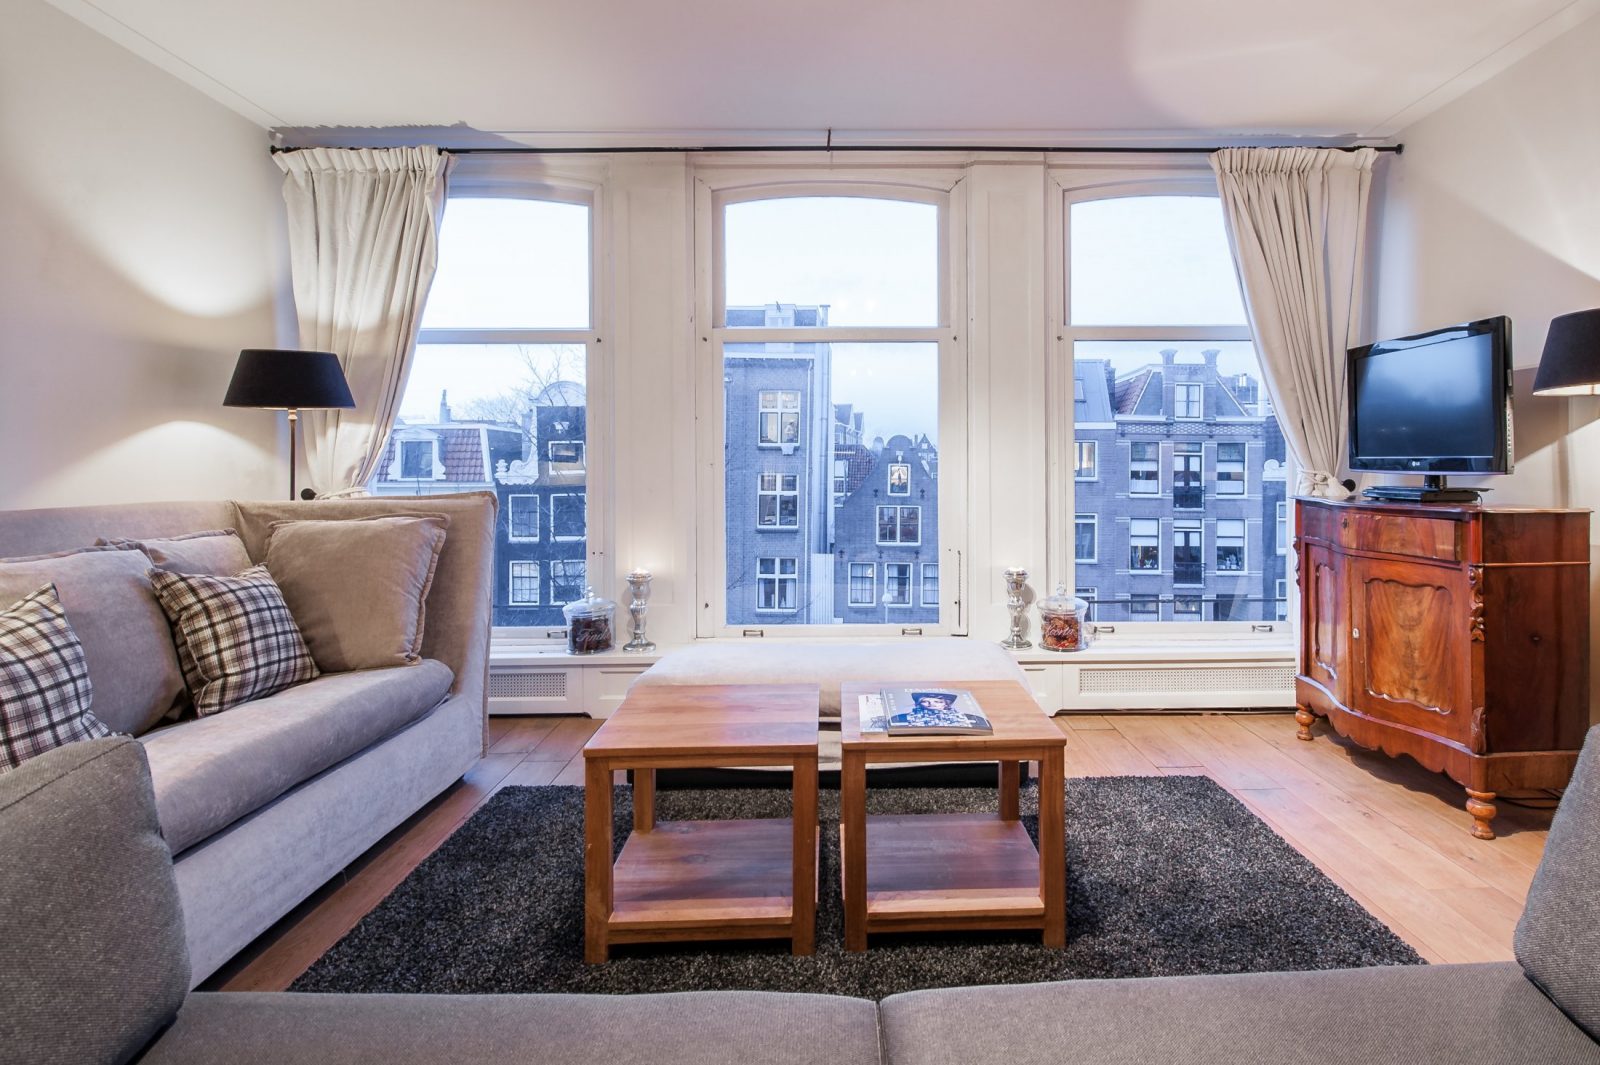 Jordaan Westerstraat Apartments Amsterdam 2 bedroom